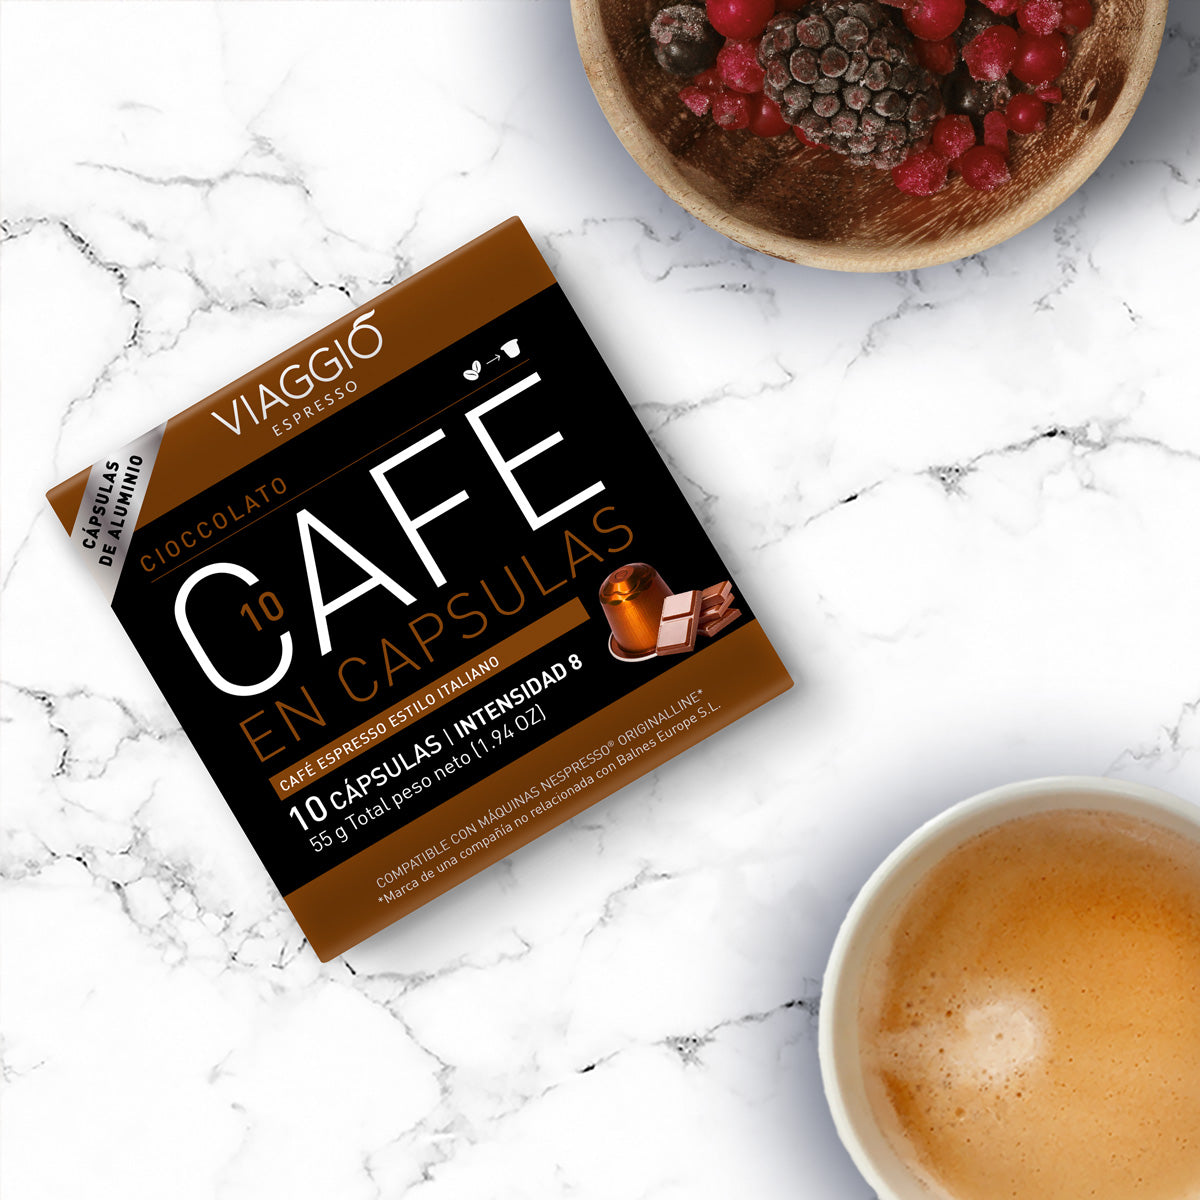 Cioccolato | 10 Cápsulas de Café compatibles con Nespresso®